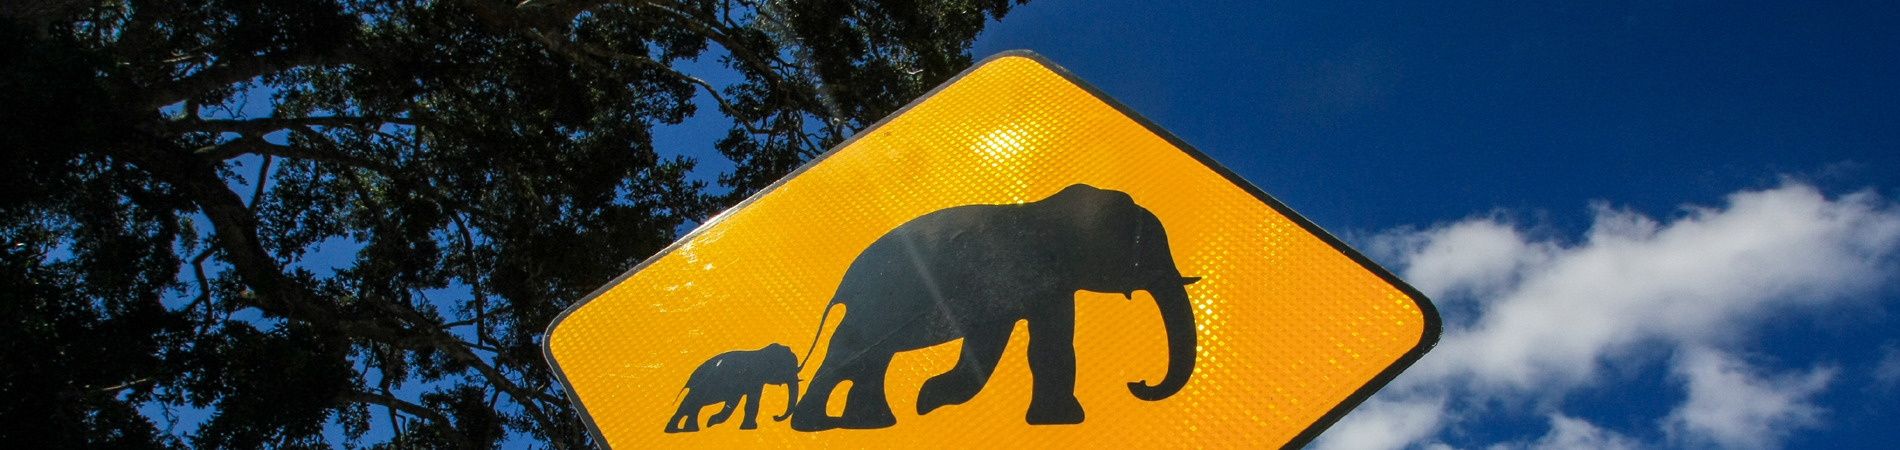 shutterstock – SRI – elephant sign header